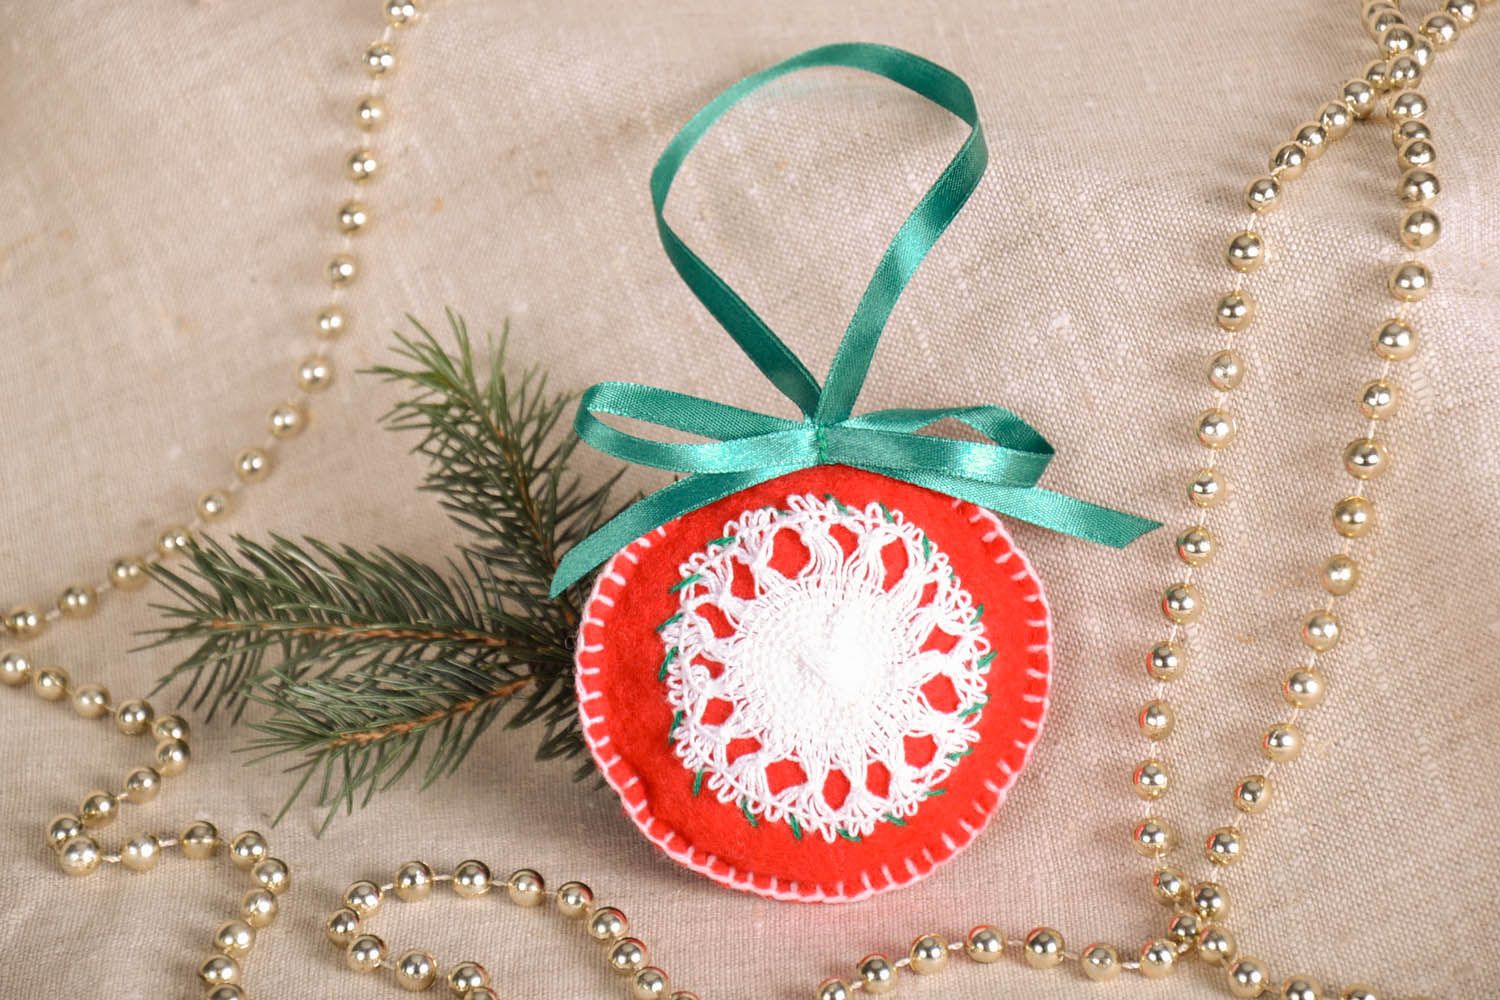 Brinquedo macio para árvore do Natal costurado a partir de algodão preenchido com sintepon foto 1